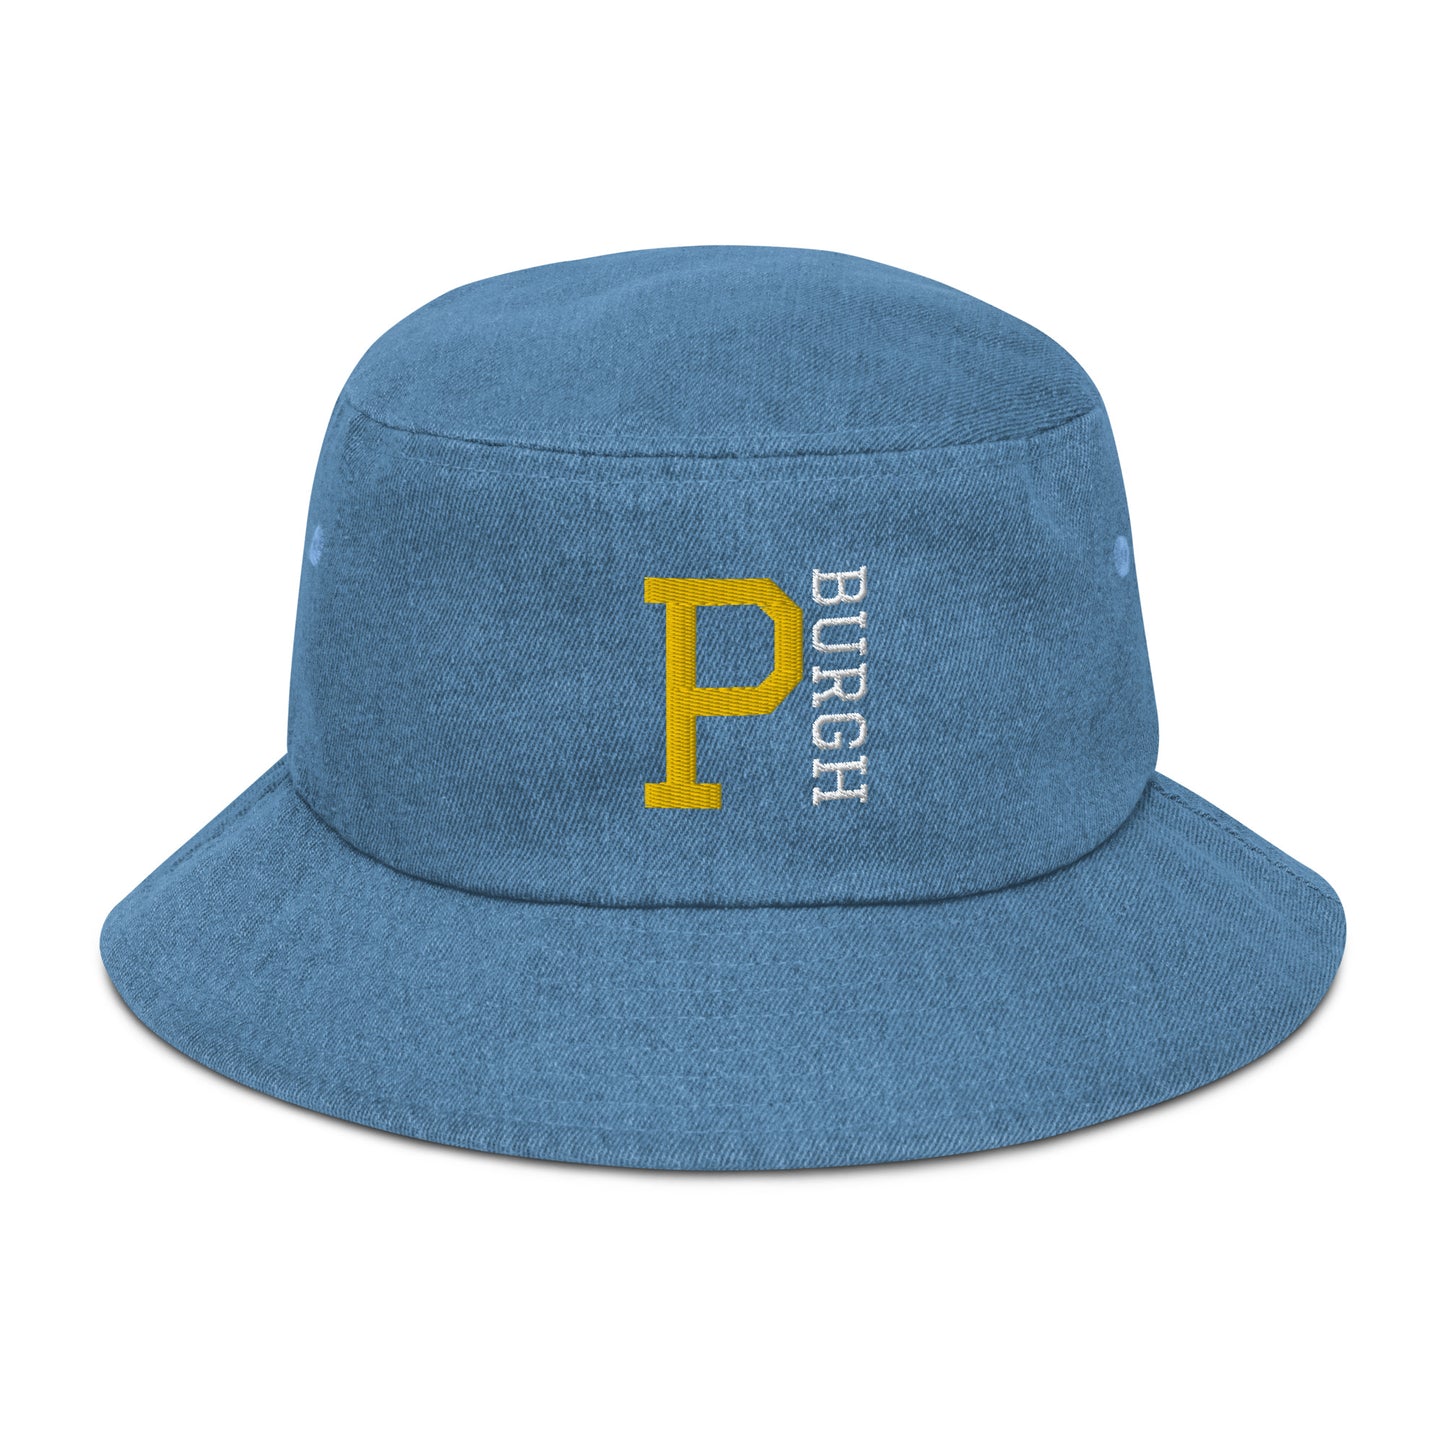 P-BURGH - Denim bucket hat